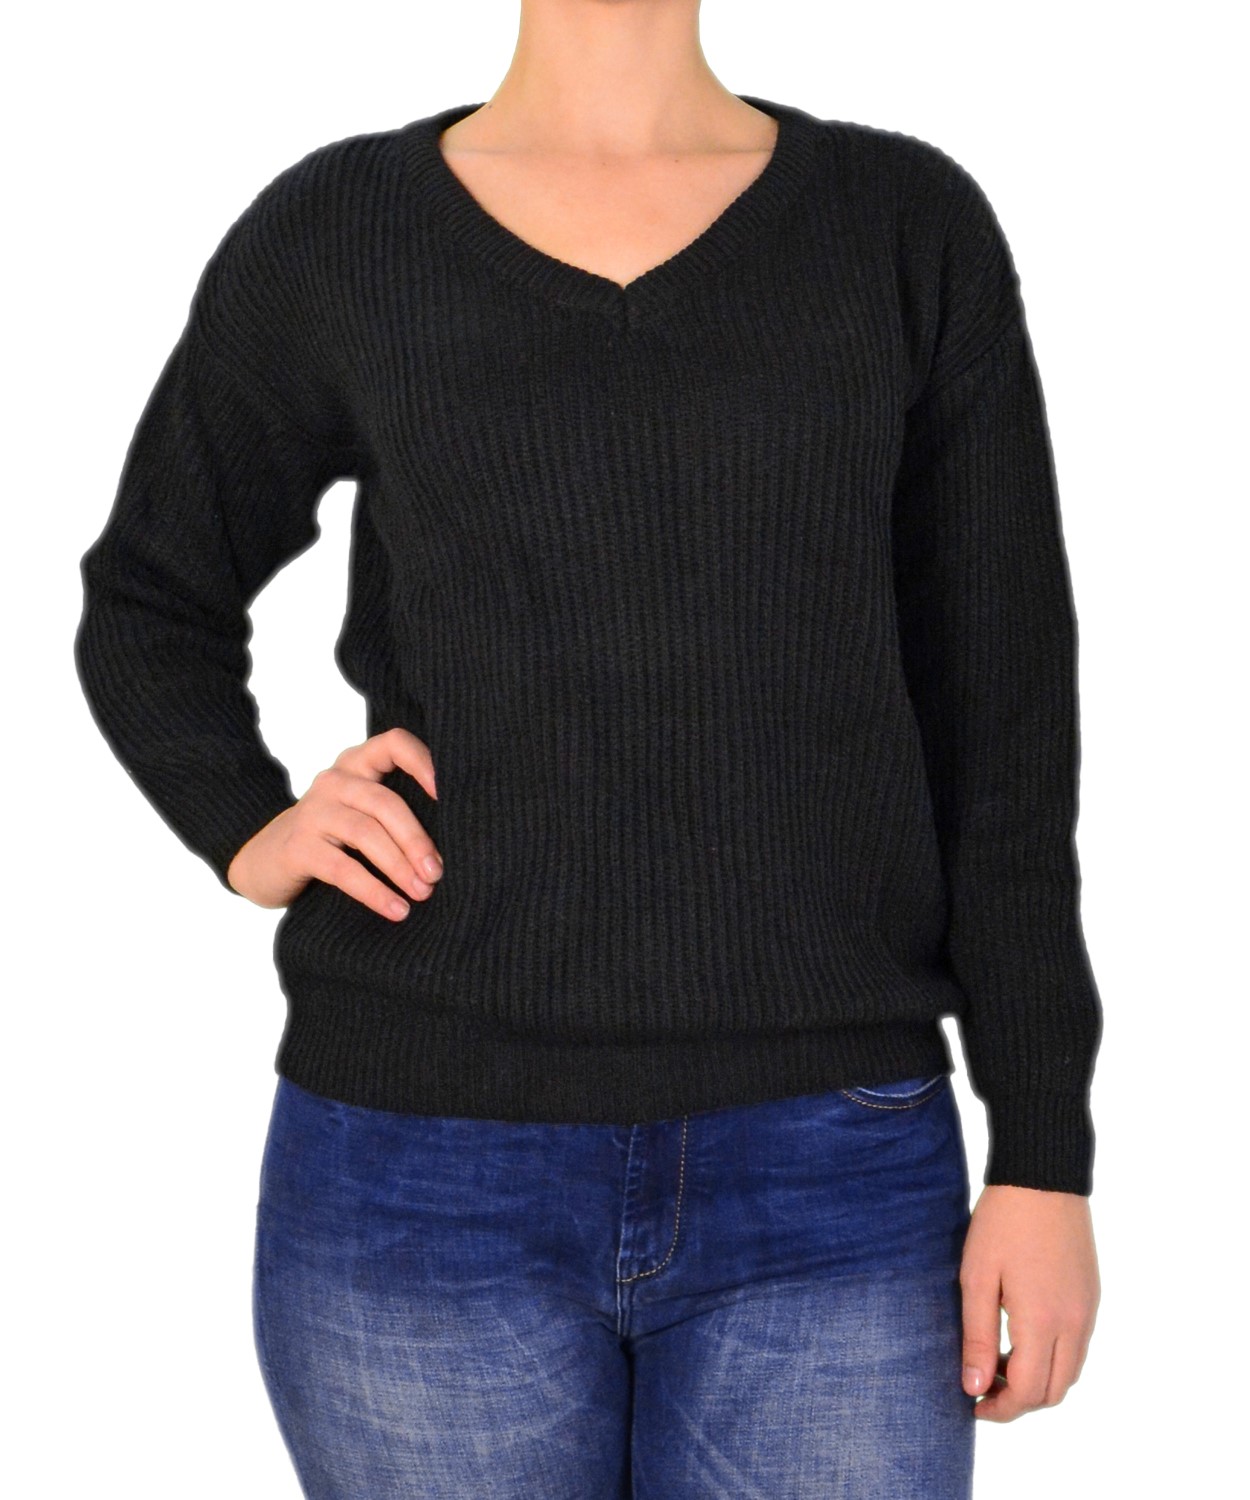 Γυναικείο μακρυμάνικο πλεκτό μπλουζάκι μαύρο 30196C